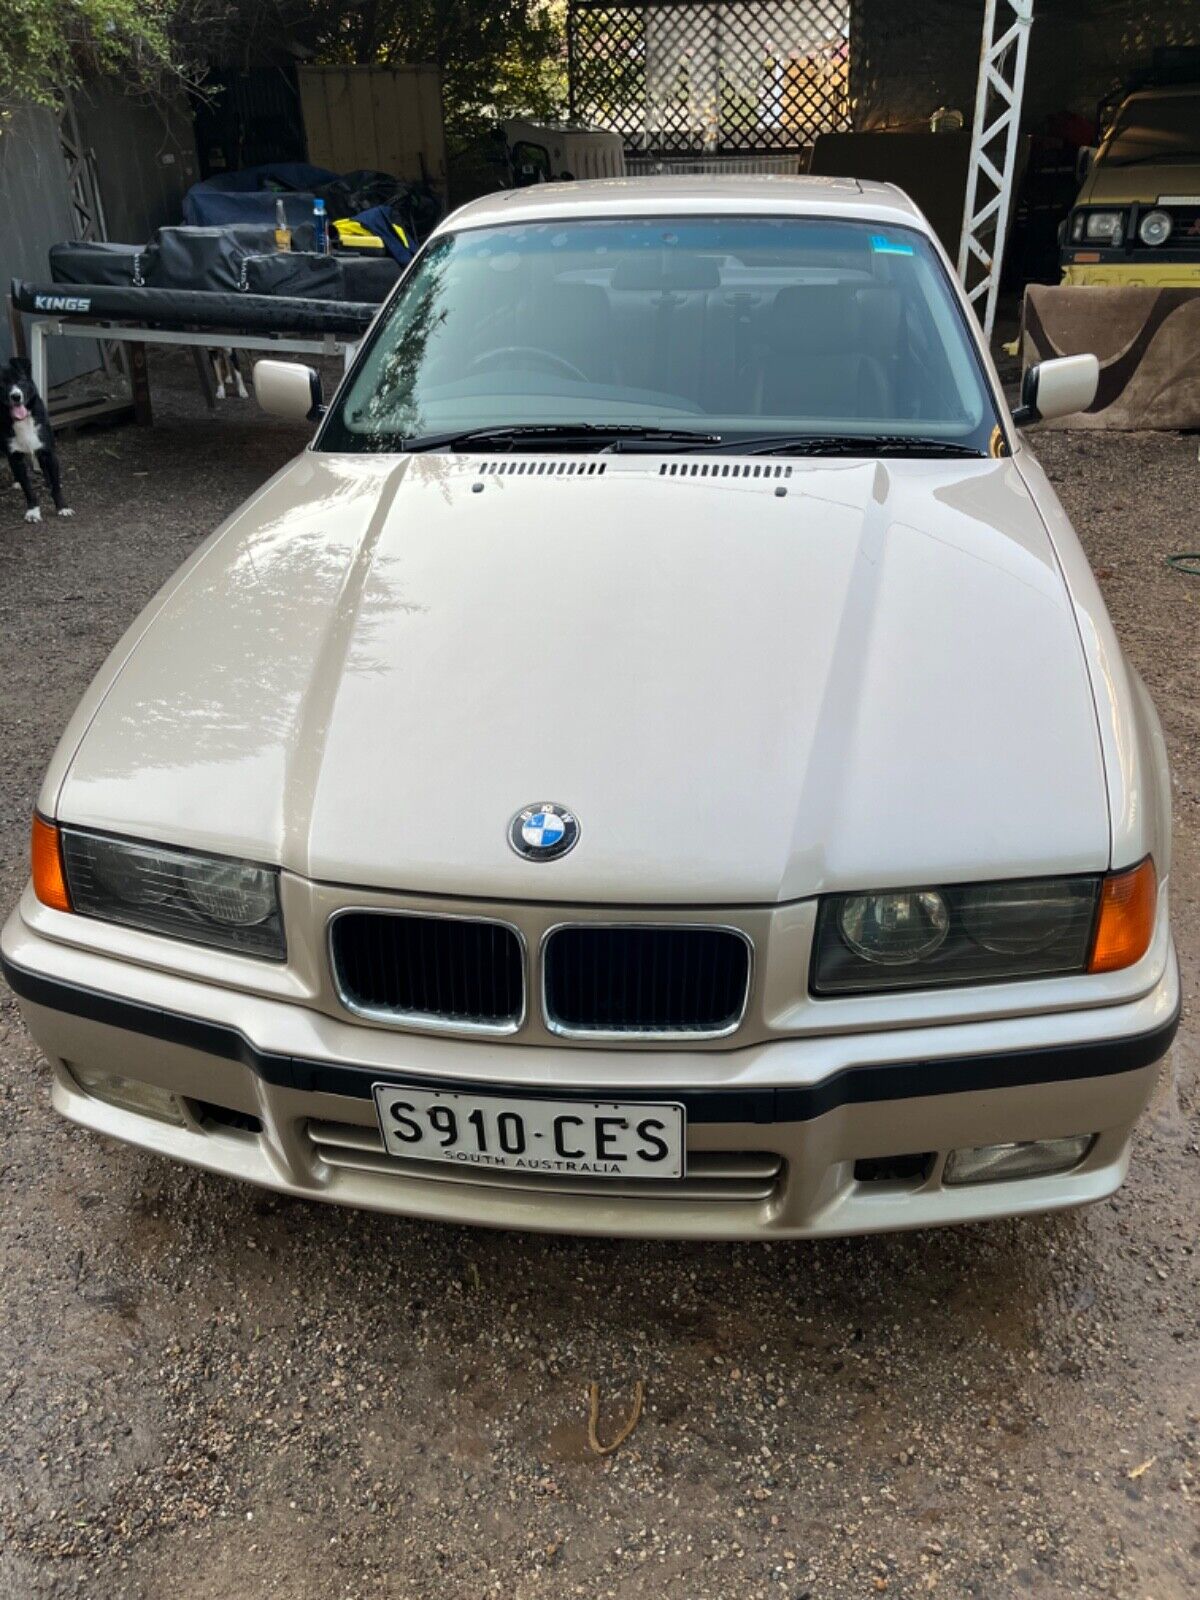 BMW 318is 1.9l